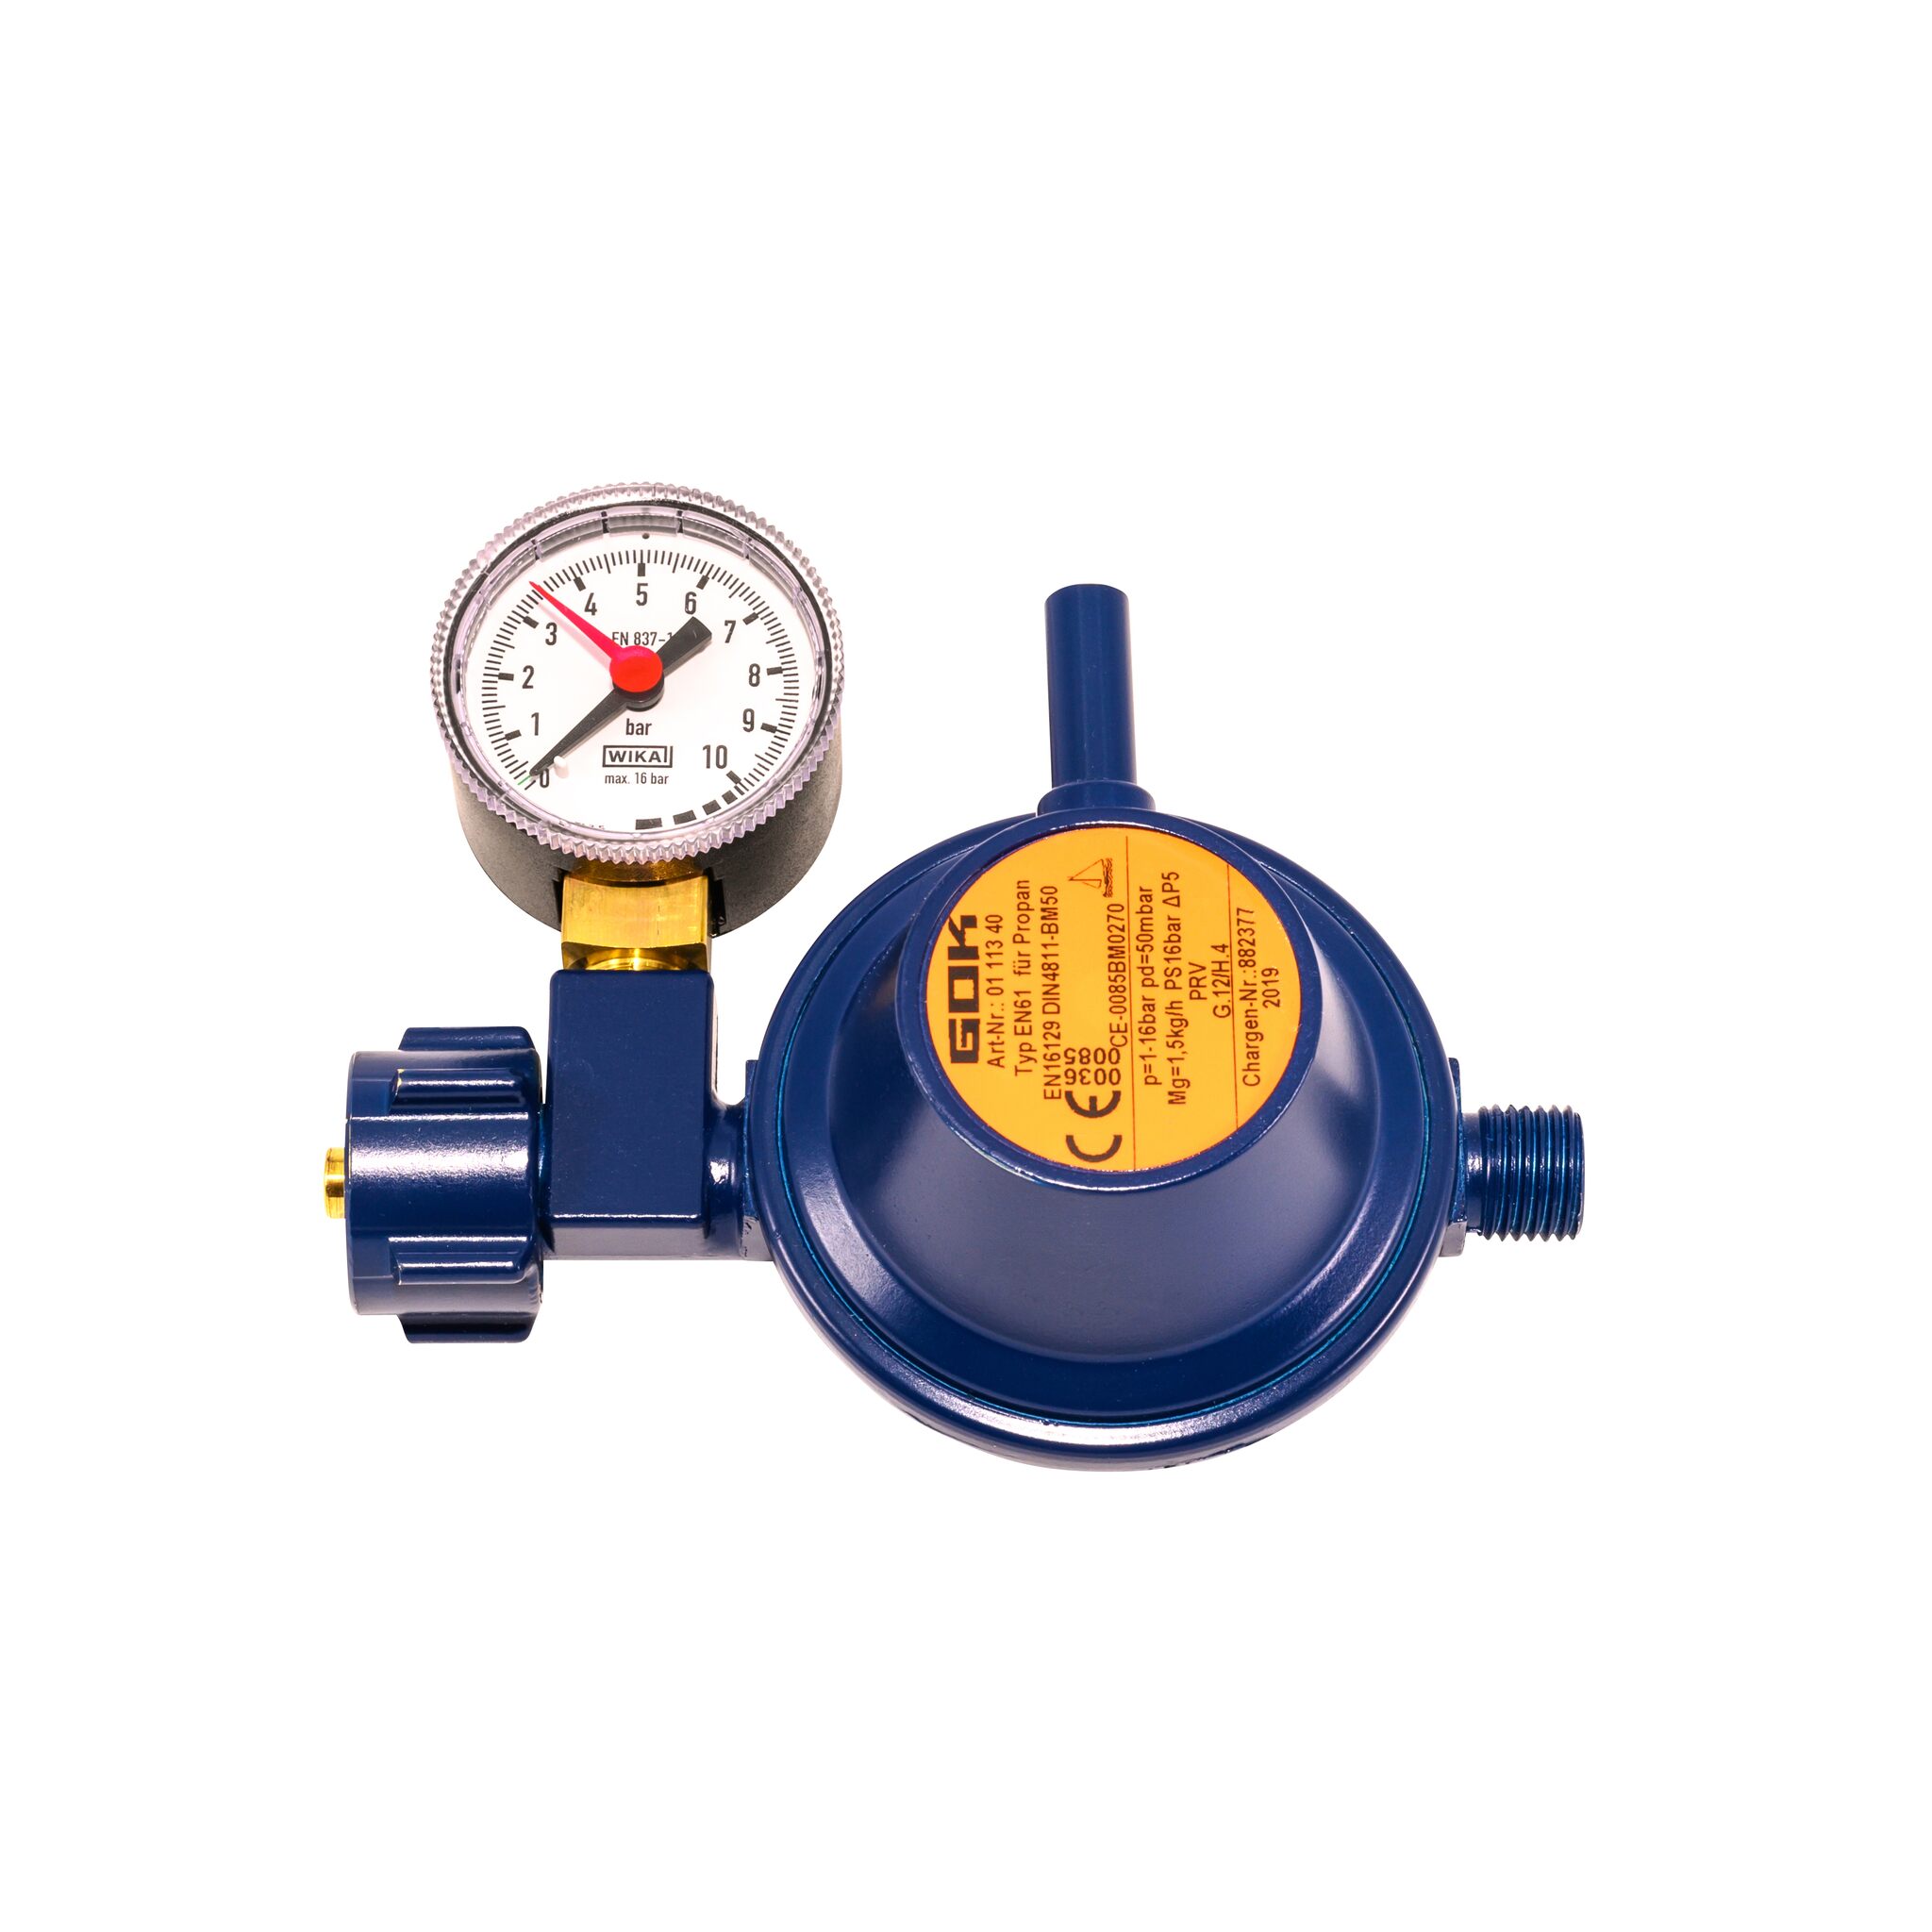 GOK pressure regulator 50 mbar 90° with pressure gauge